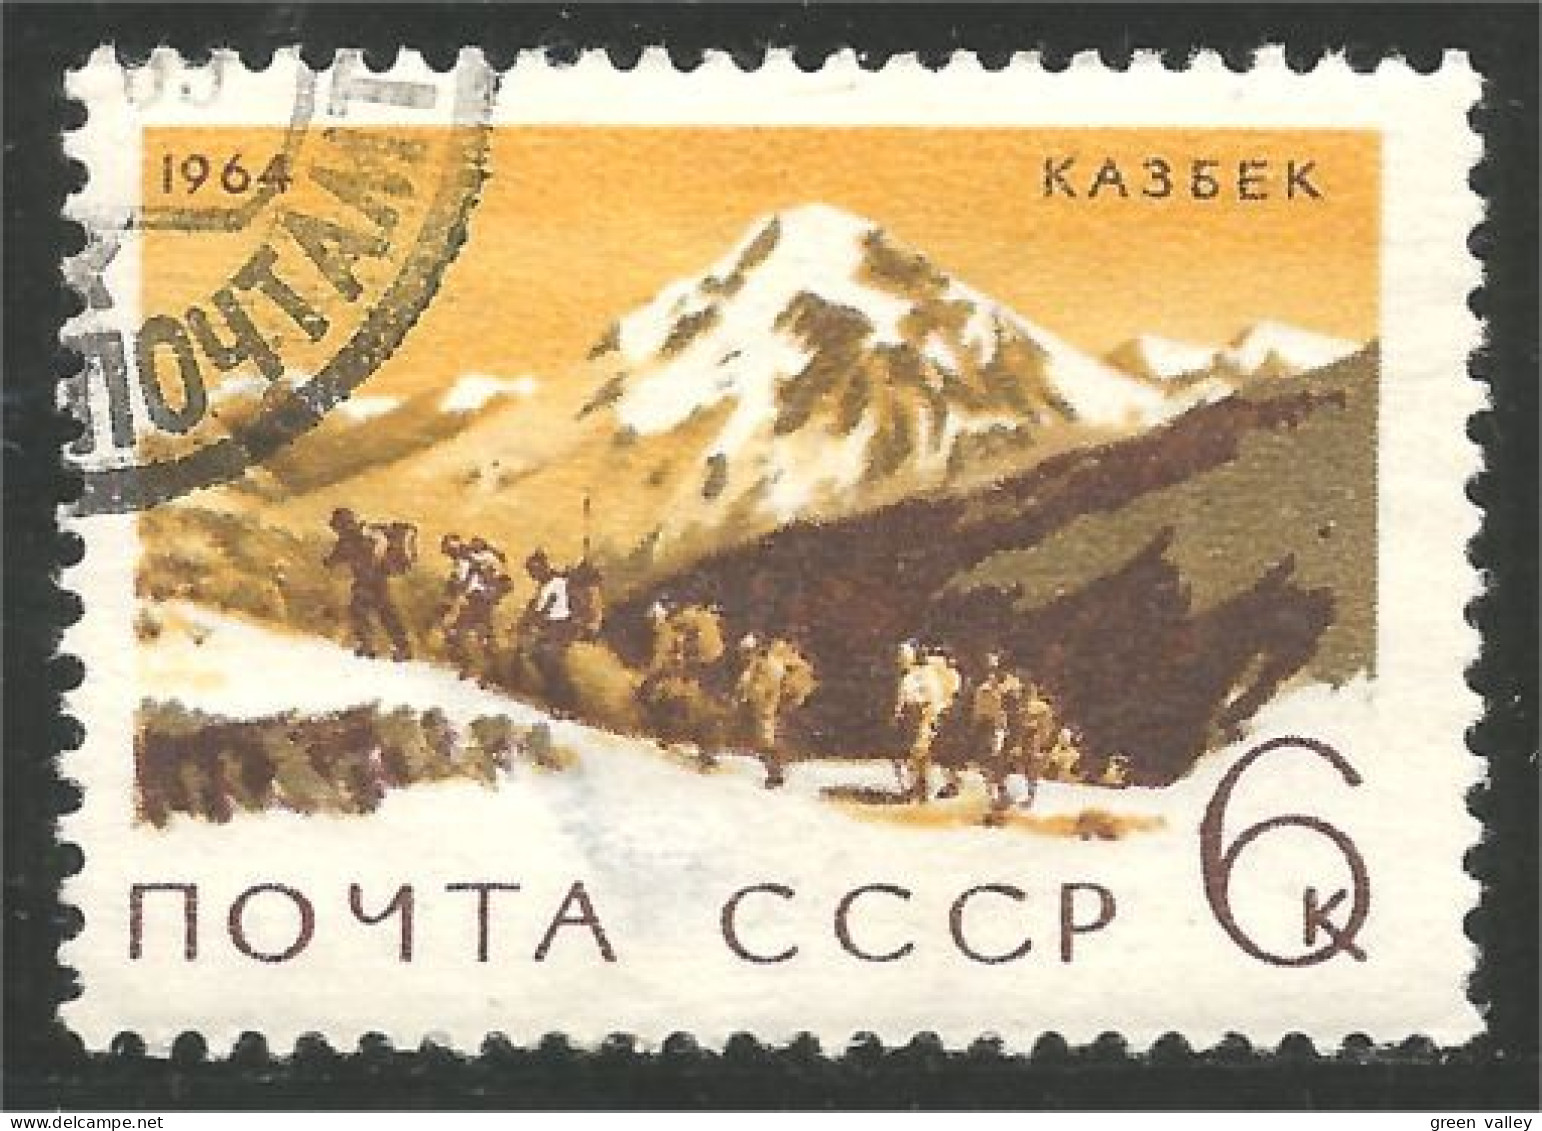 773 Russie Escalade Mountain Climbing Randonnée Trekking (RUK-623) - Klimmen